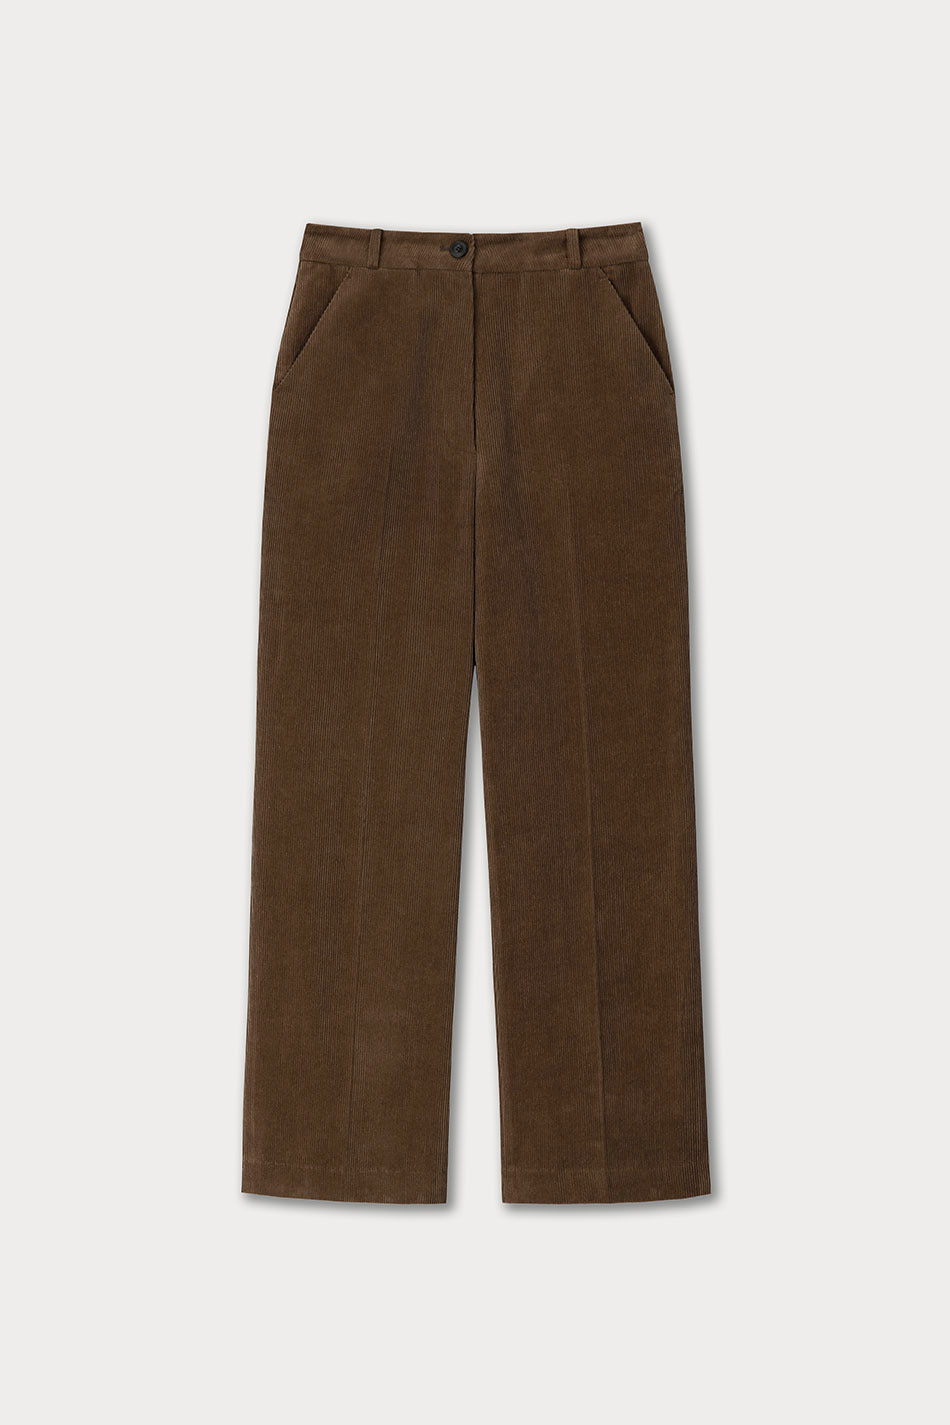 4th / Pintuck Corduroy Pants (Brown)